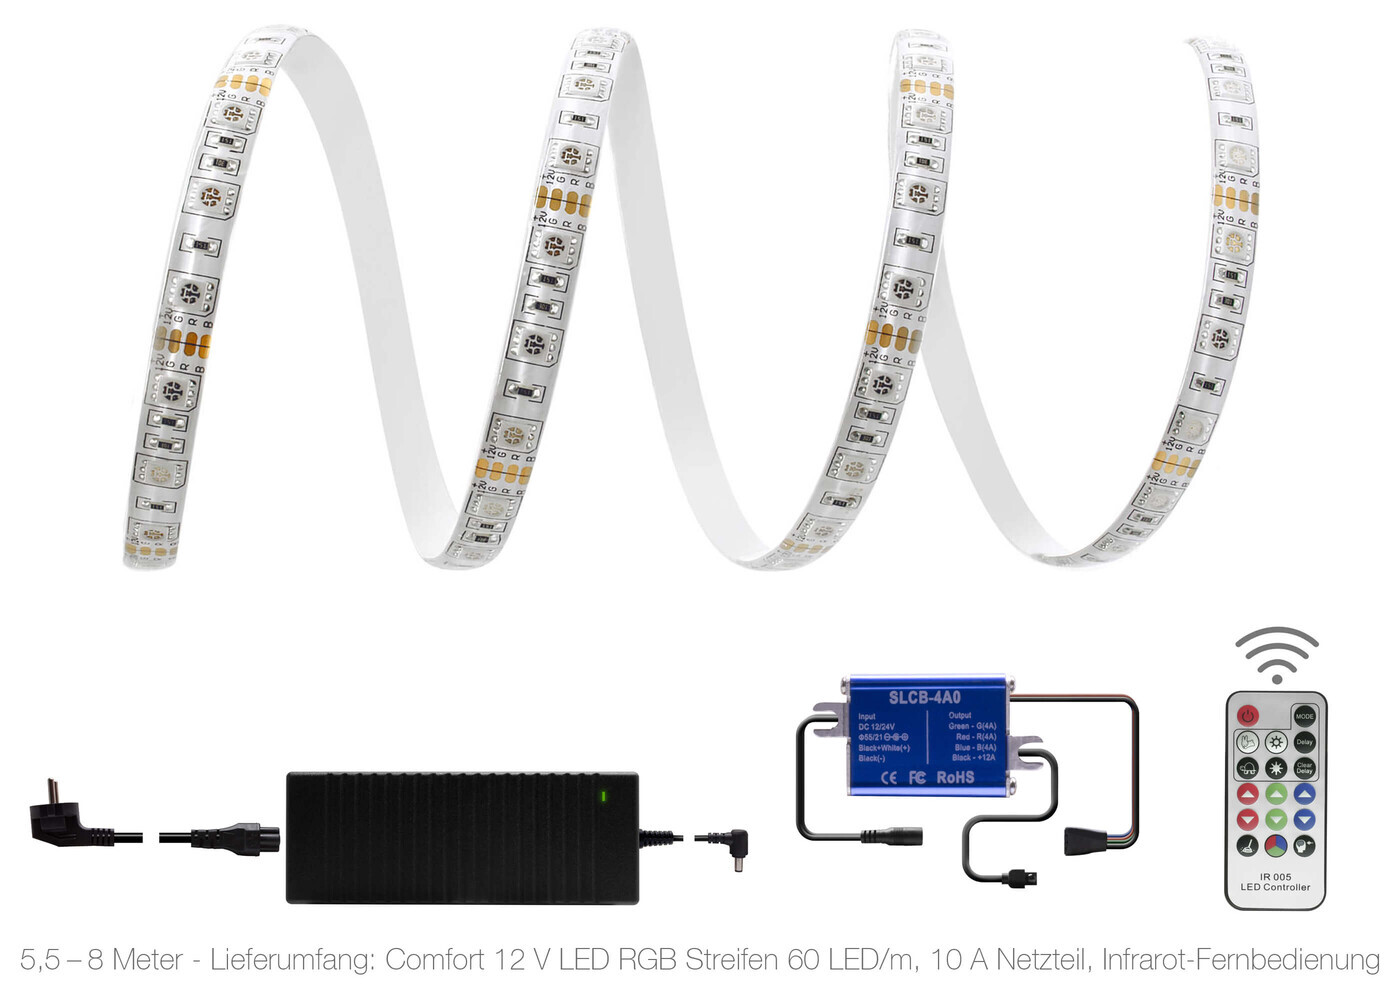 Hochwertiger farbenfroher LED Streifen von LED Universum mit leistungsstarker Fernbedienung